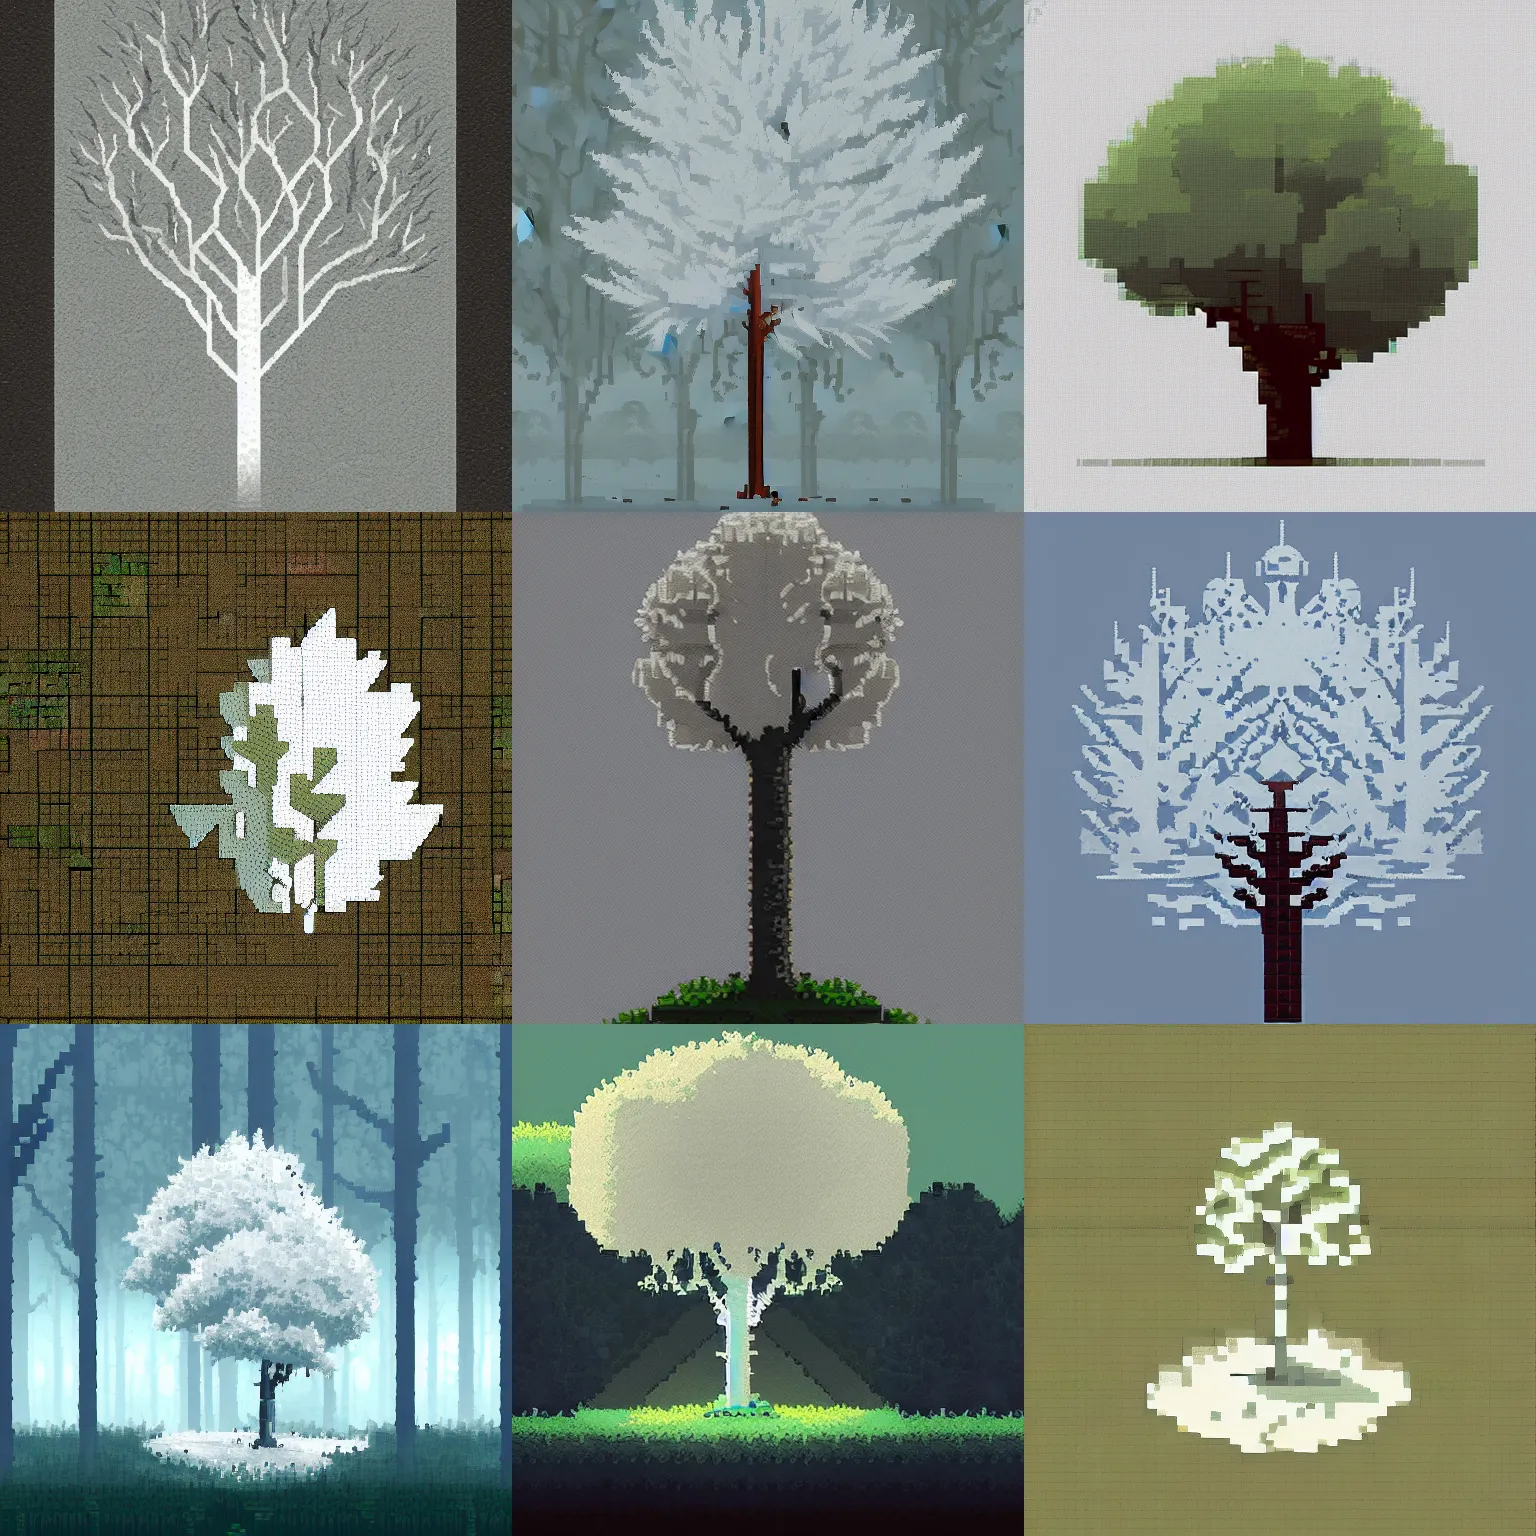 Prompt: white leaves tree, pixel art, pixel art, pixel art, pixel art, game concept art, simple palette, ( ( ( ( ( ( ( ( by greg rutkowski ) ) ) ) ) ) ) )